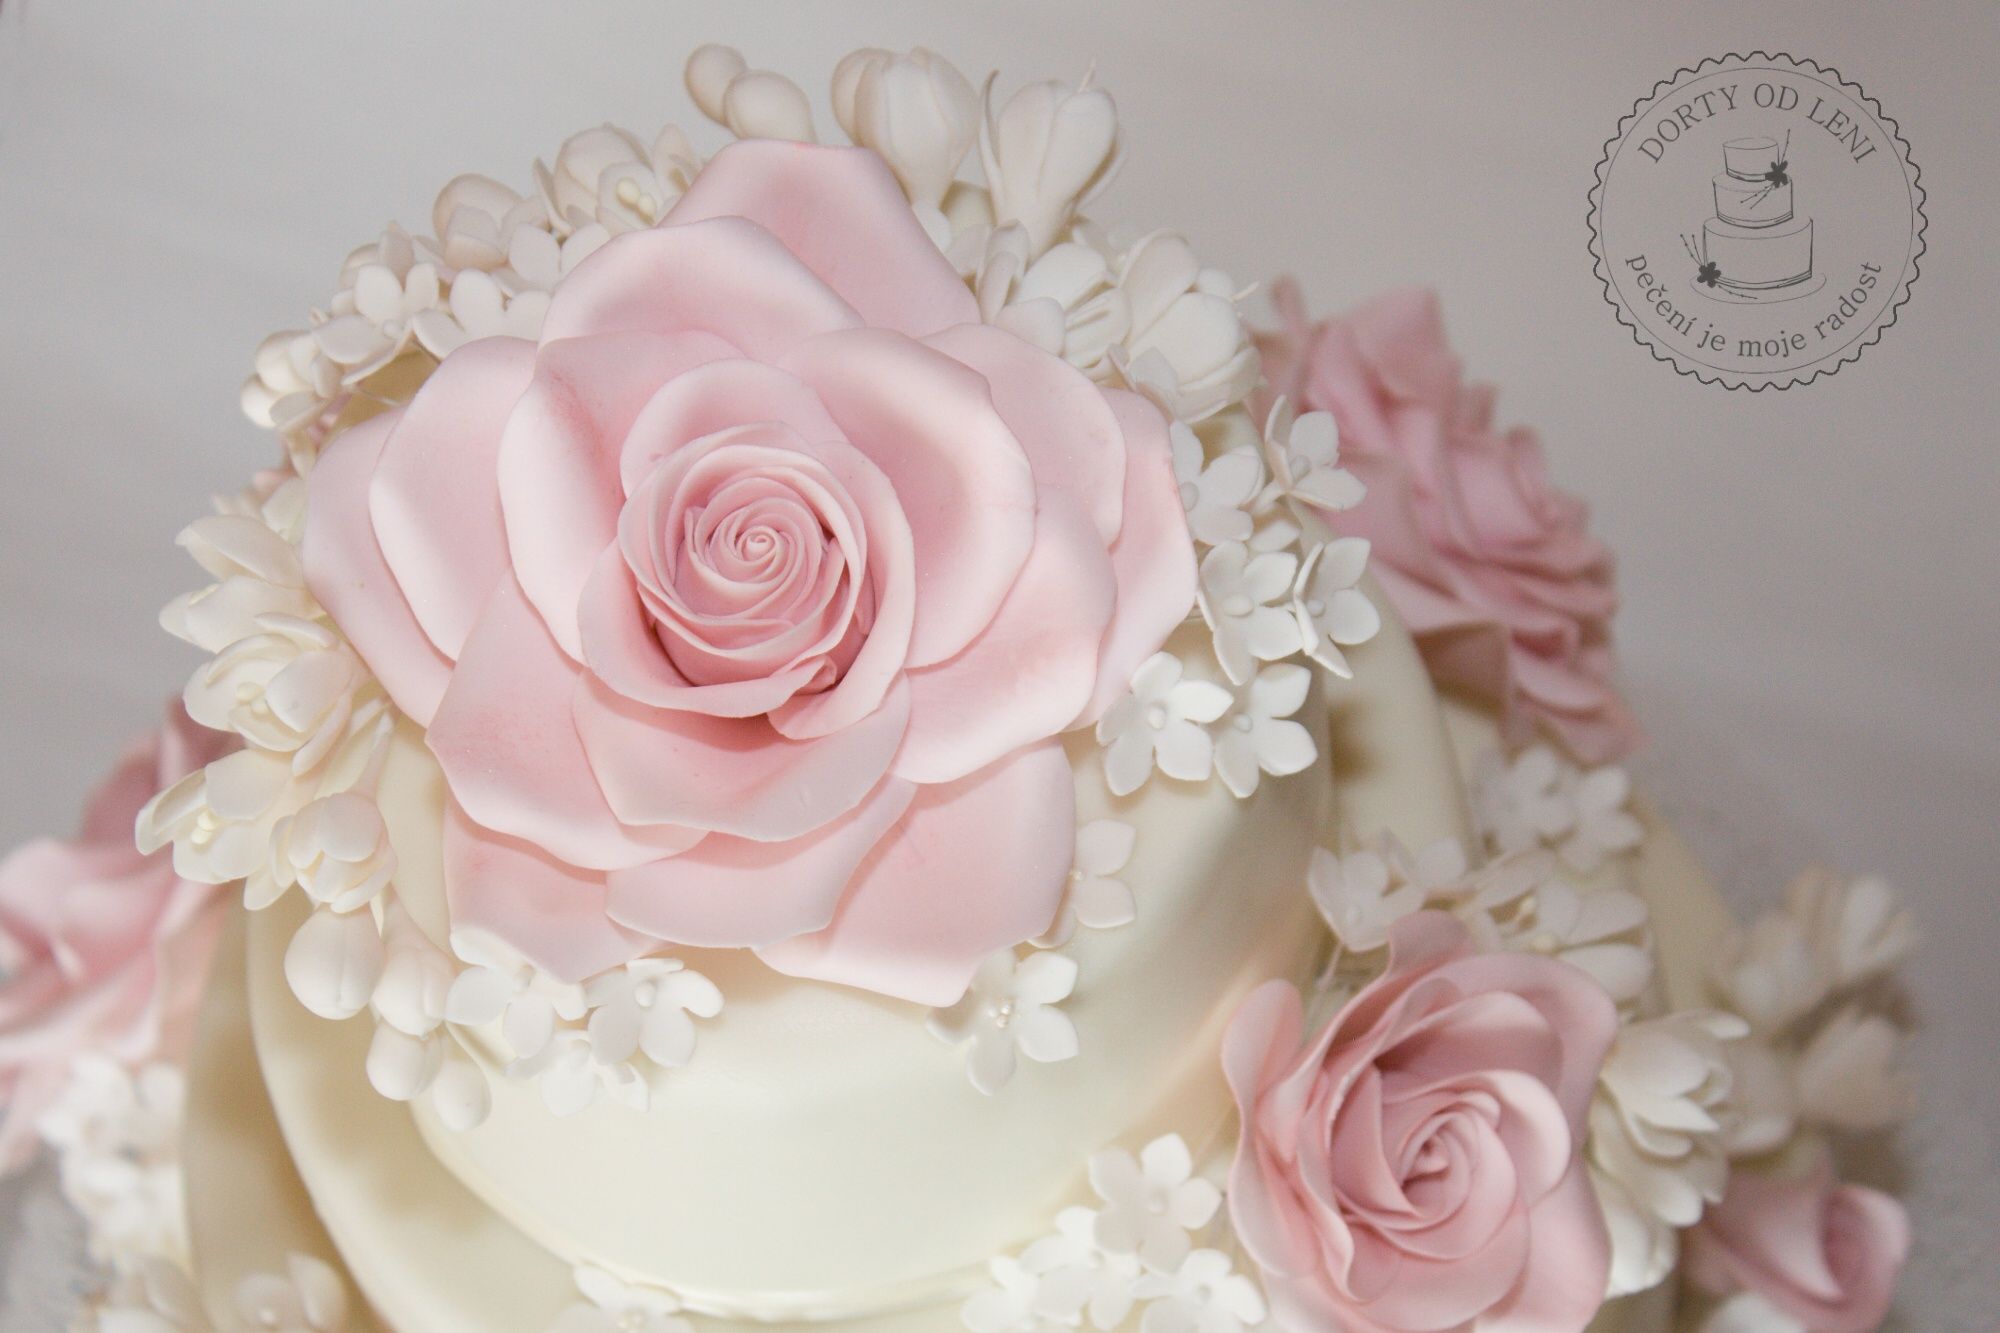 Jedlé květy na svatebním dortu